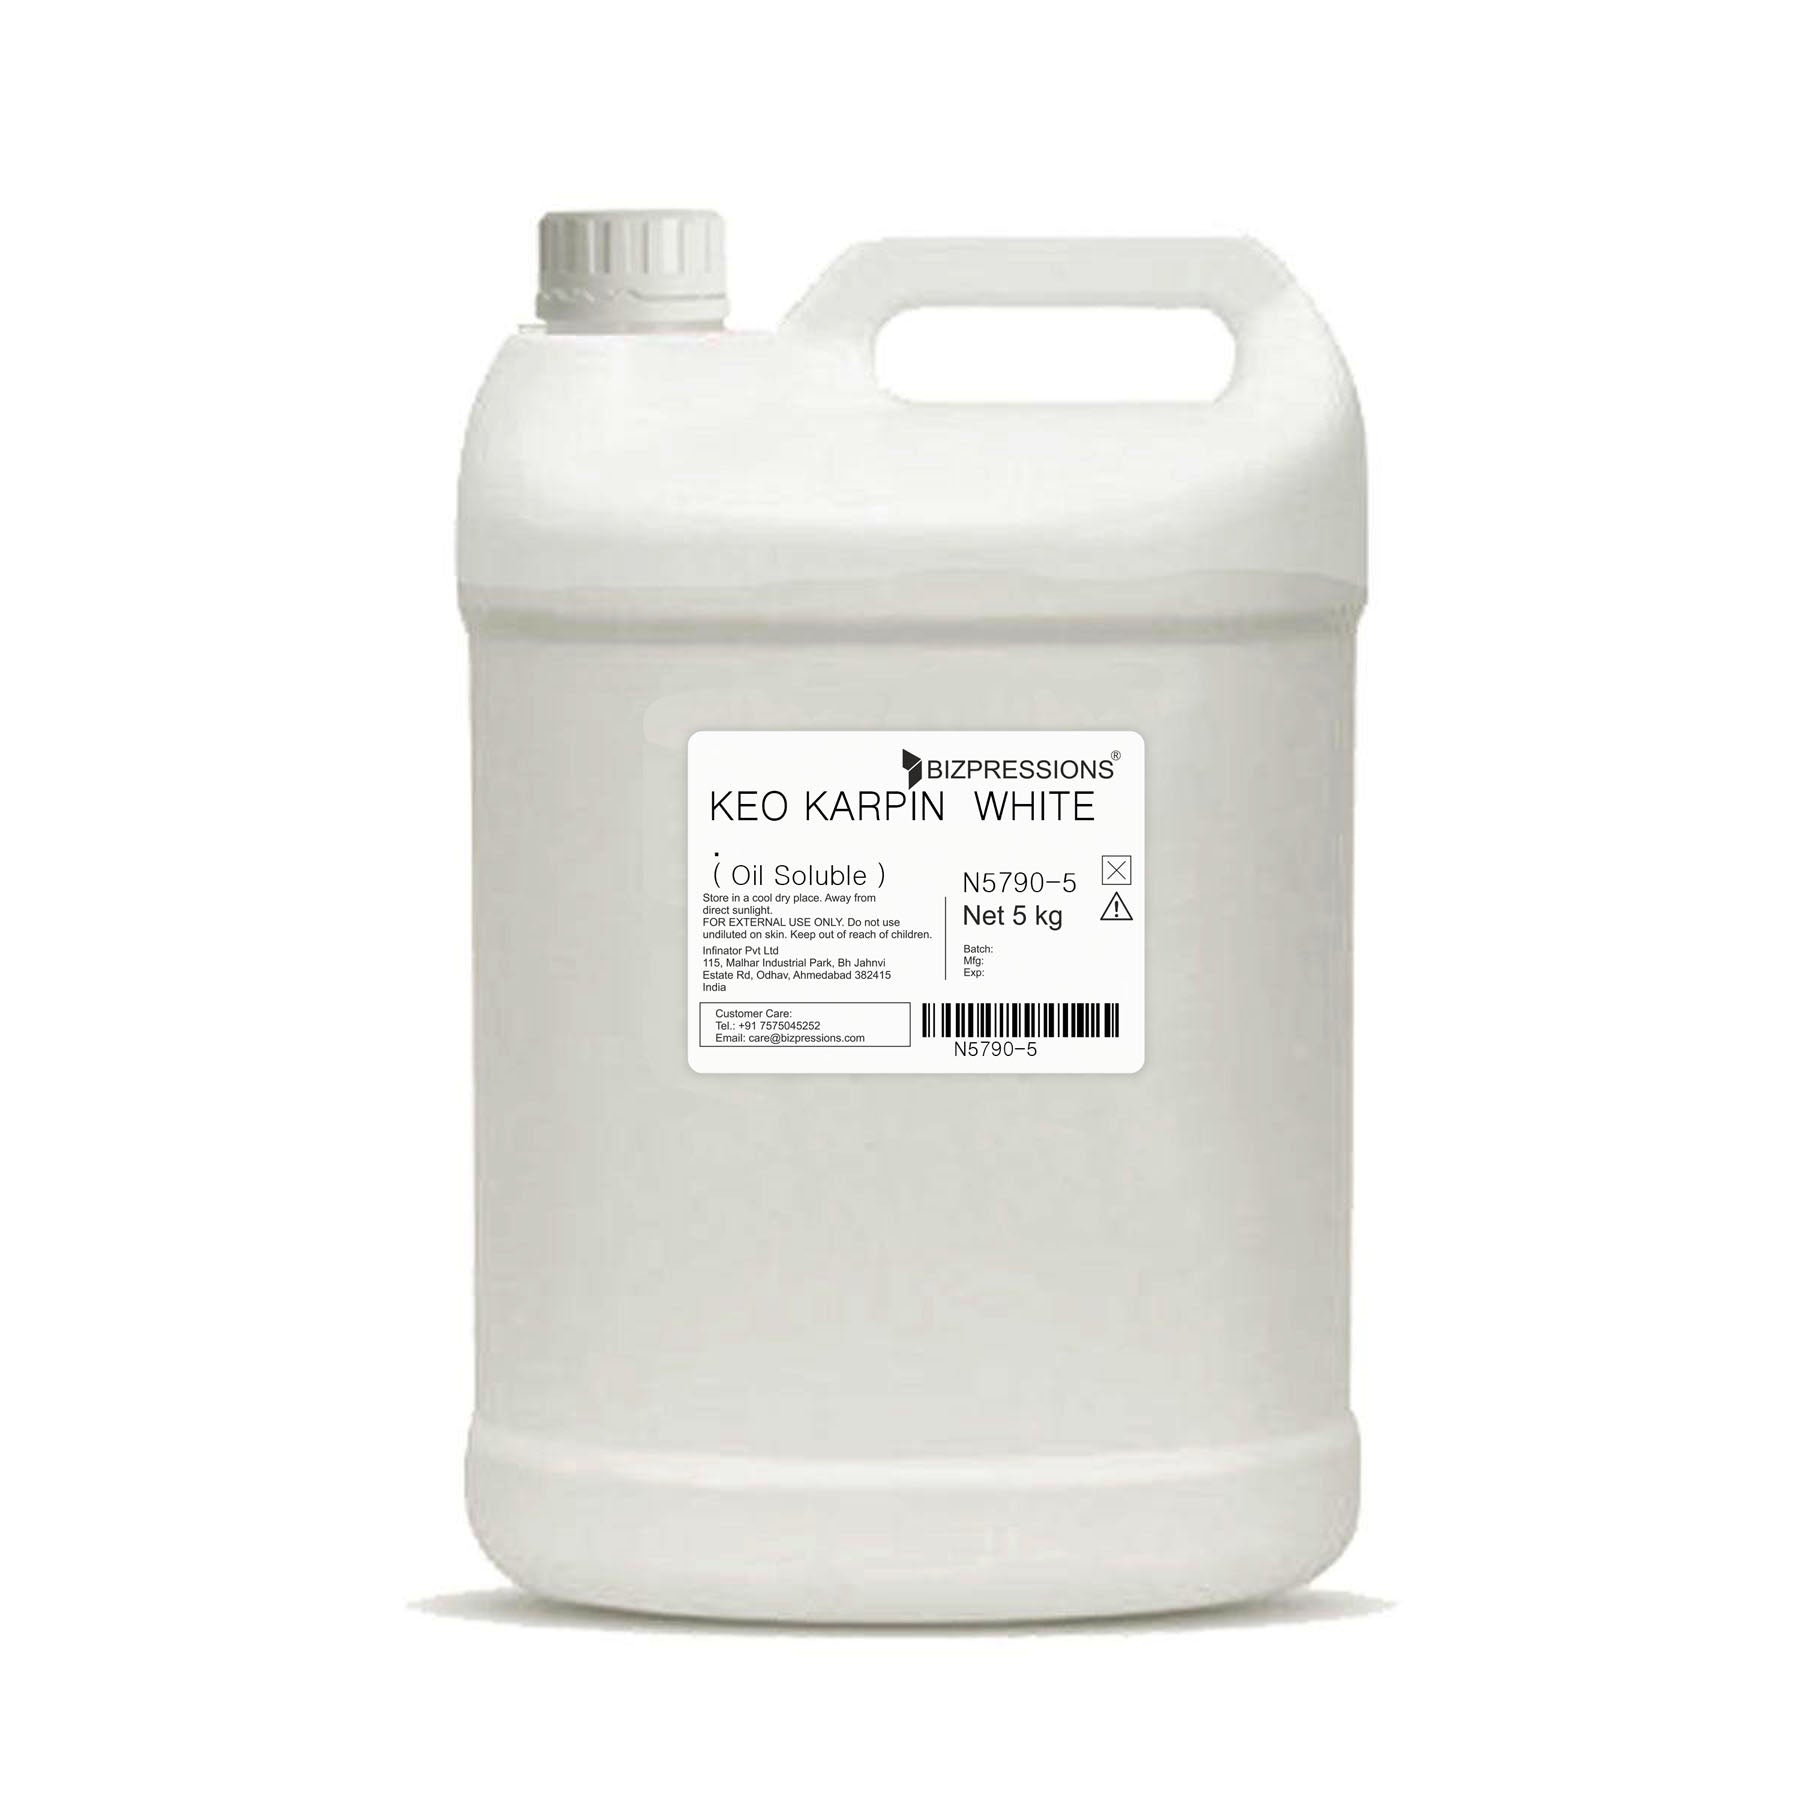 KEO KARPIN WHITE - Fragrance ( Oil Soluble ) - 5 kg